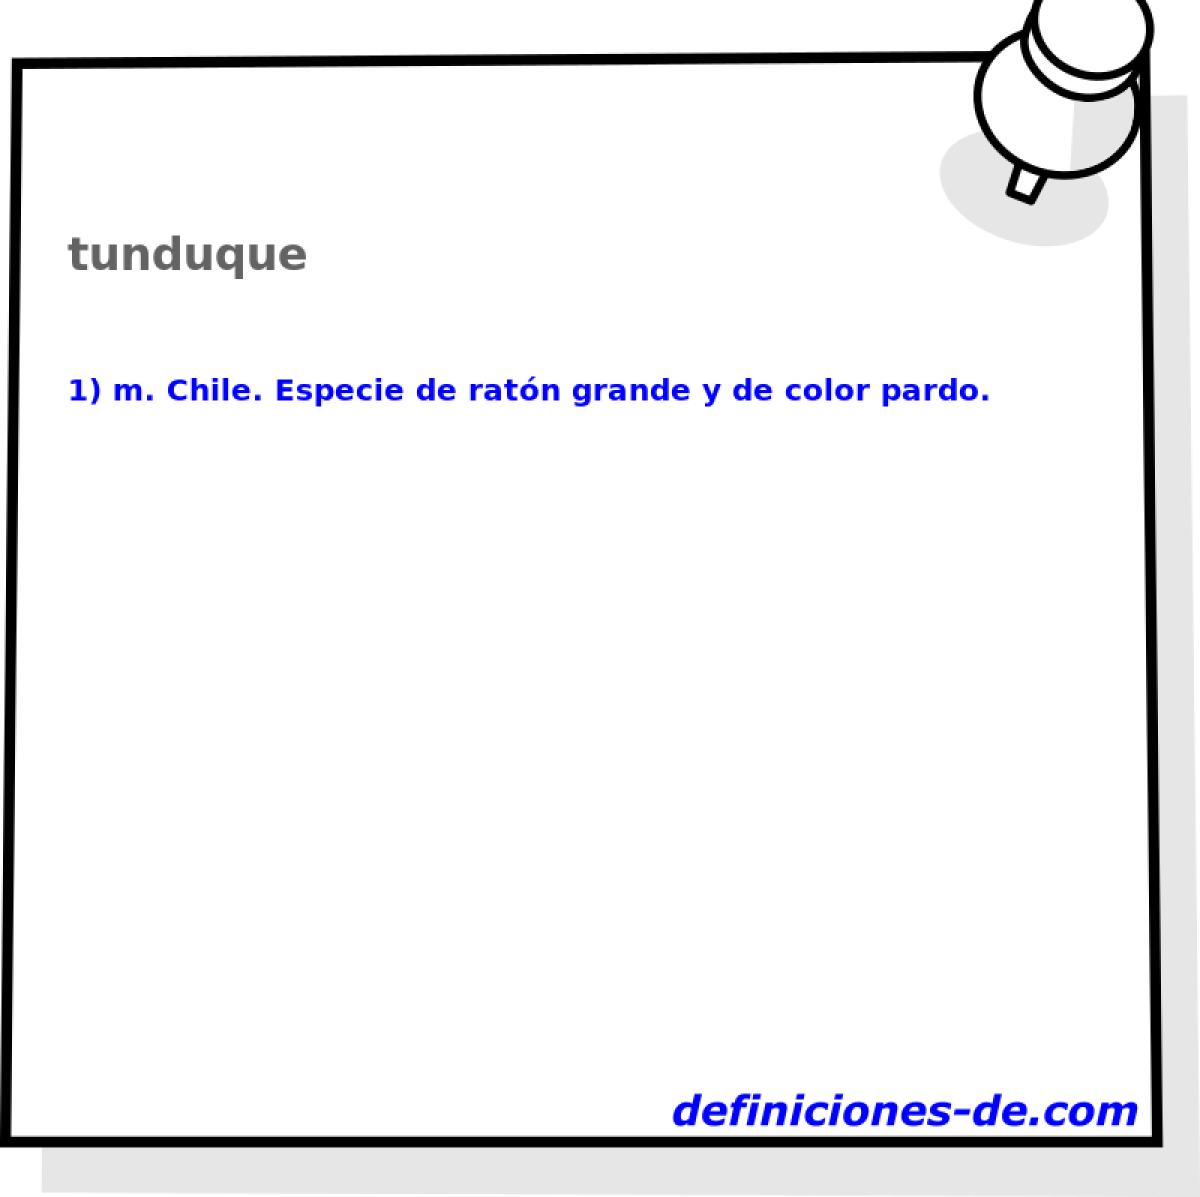 tunduque 